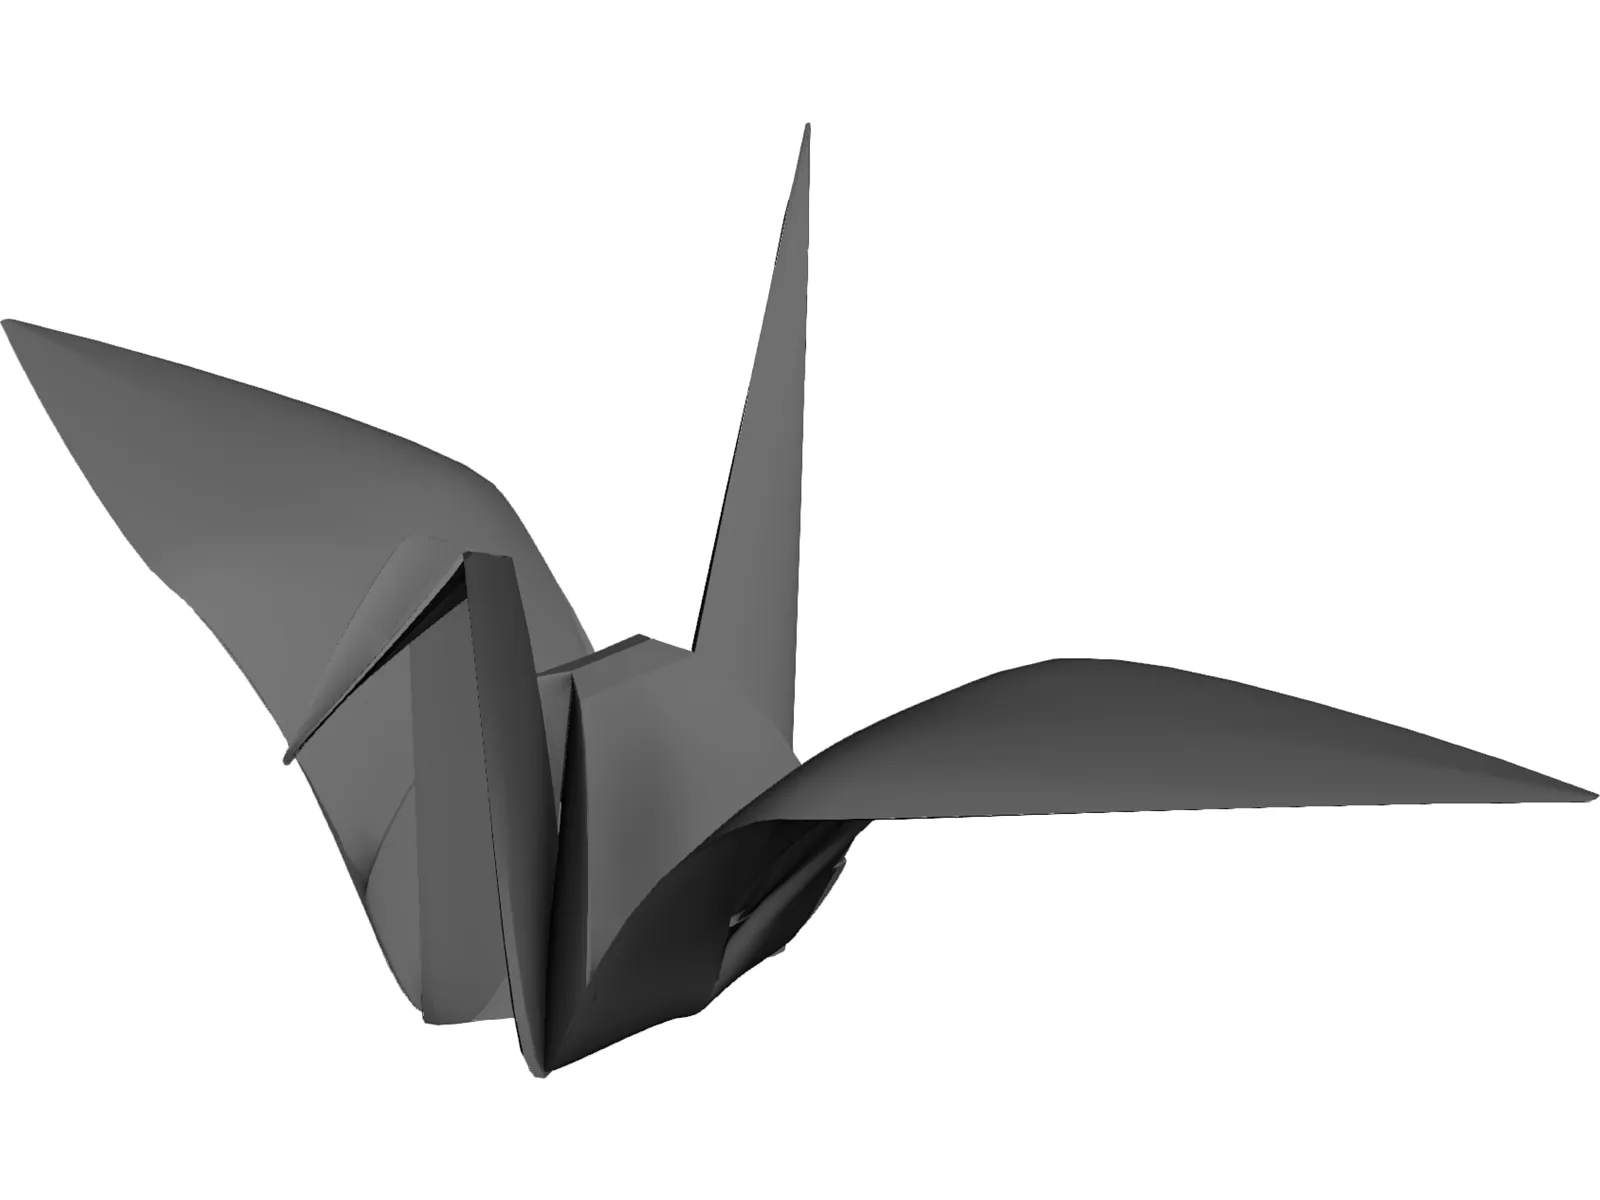 Origami Crane 3D Model